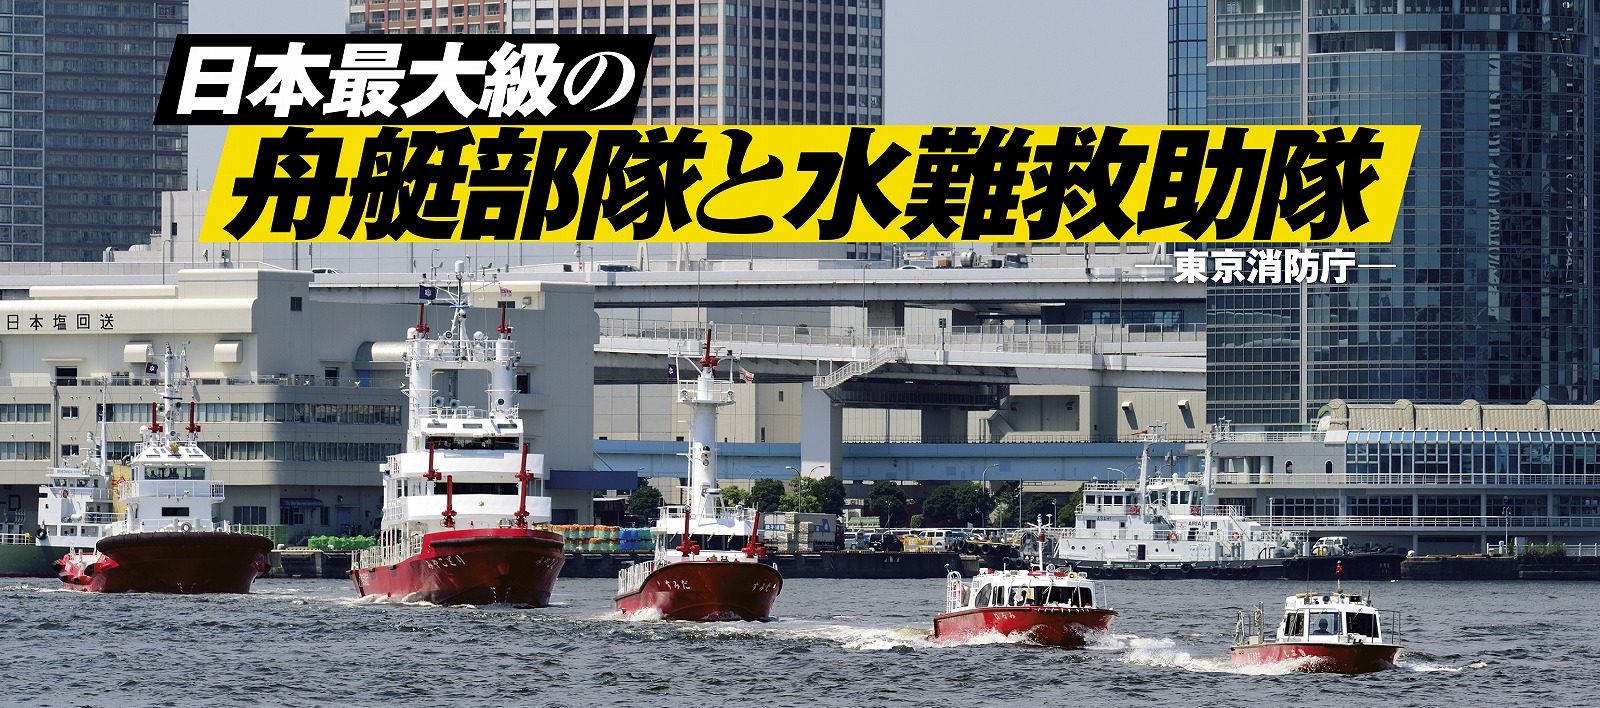 東京の海・河川を守る<br>日本最大級の舟艇部隊と水難救助隊　―東京消防庁―